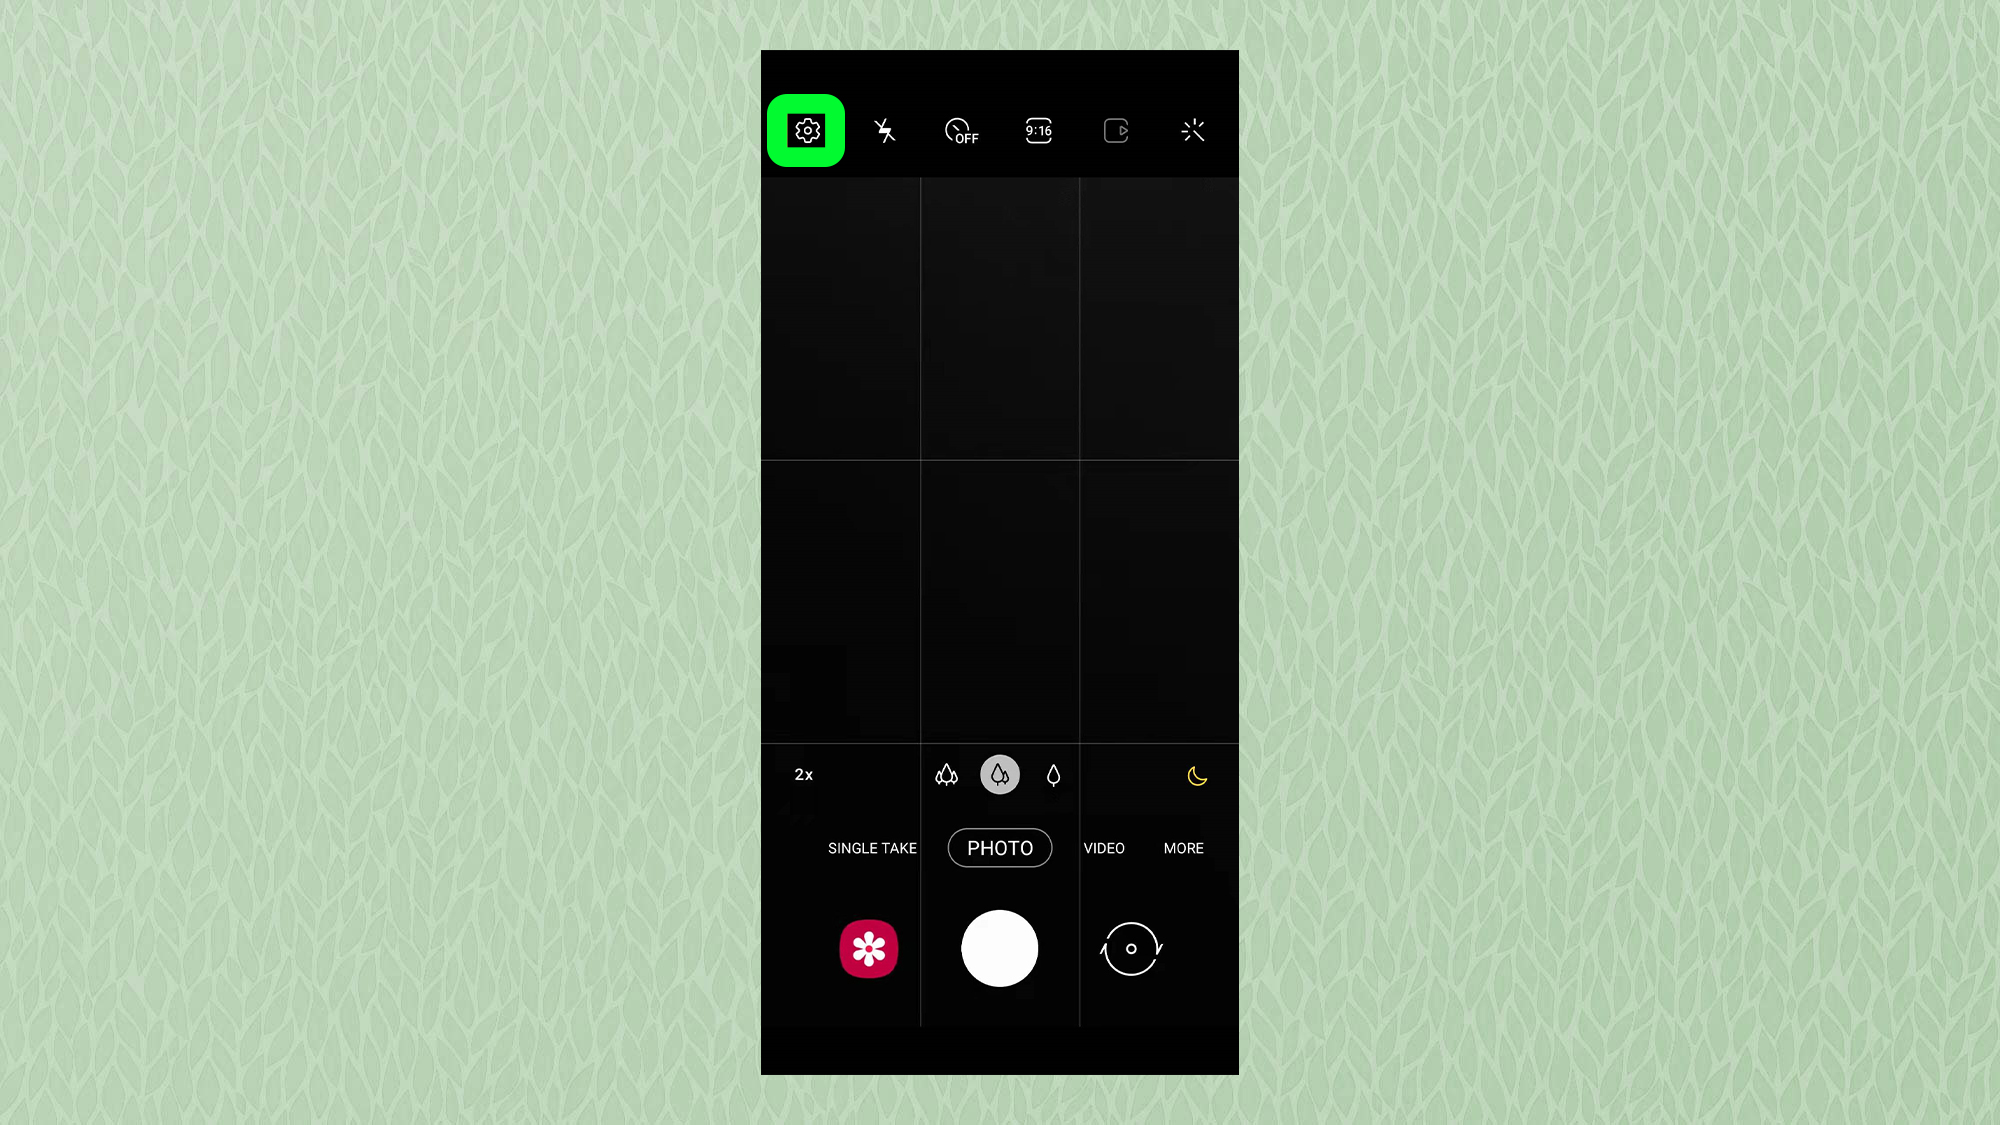 Скриншот из приложения камеры Samsung, на котором выделена шестеренка настроек.